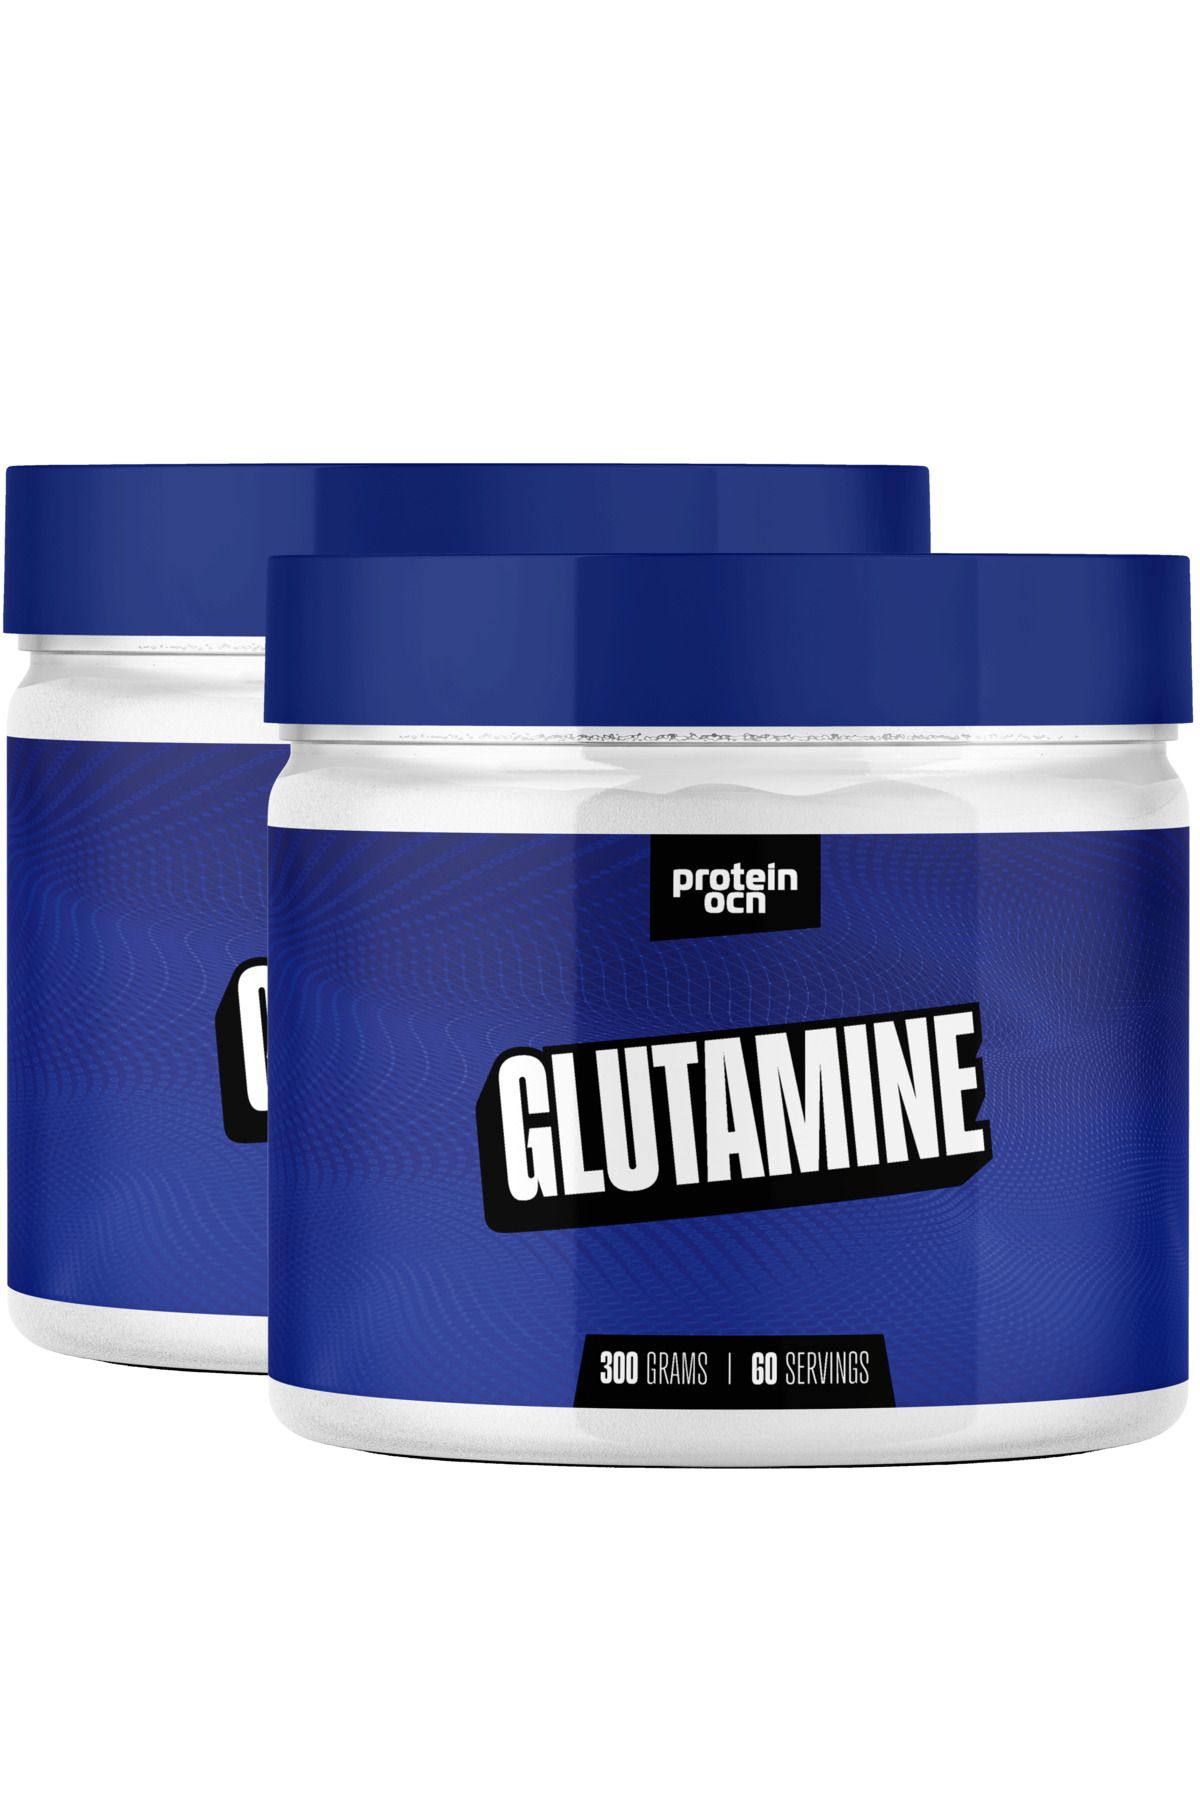 Proteinocean Glutamine - 300g X 2 Adet